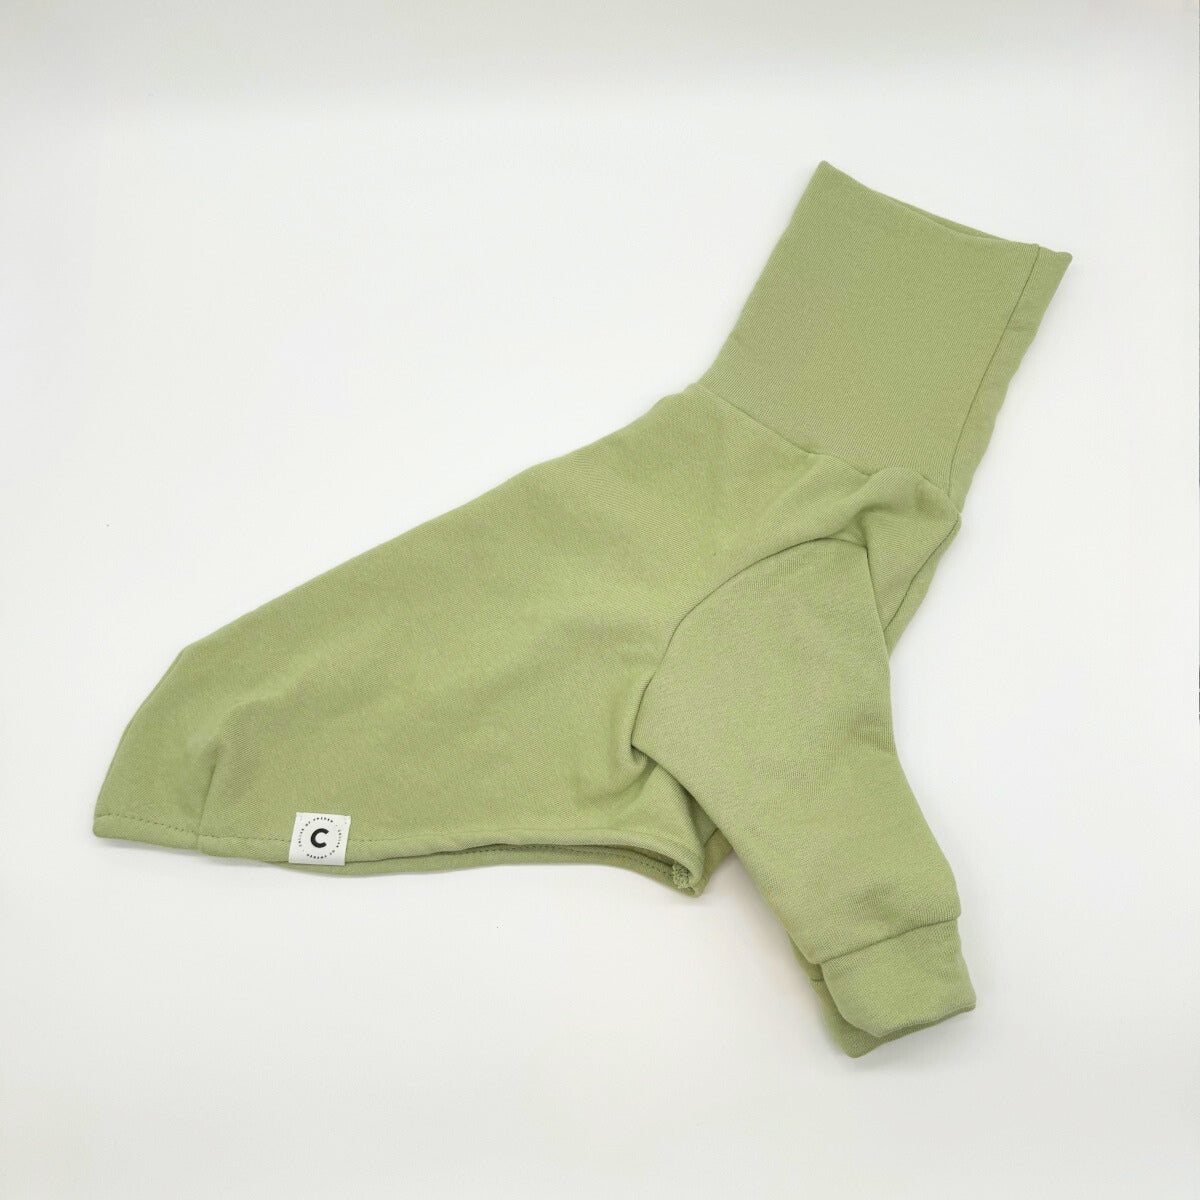 italian-greyhound-sweater-pastel-green-sweatshirt_423d7986-b2dc-4809-b6f8-4d4d505759f8.jpg